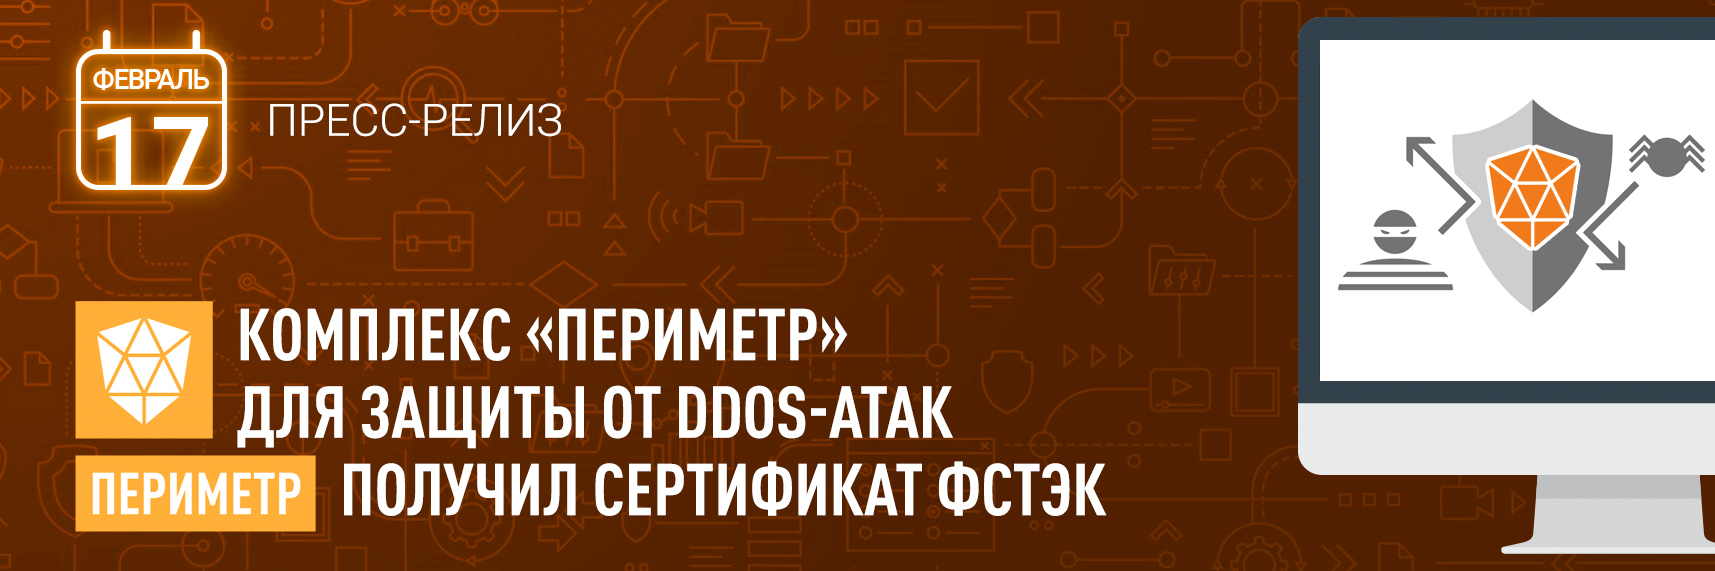 Комплекс «Периметр» для защиты от DDoS-атак получил сертификат ФСТЭК